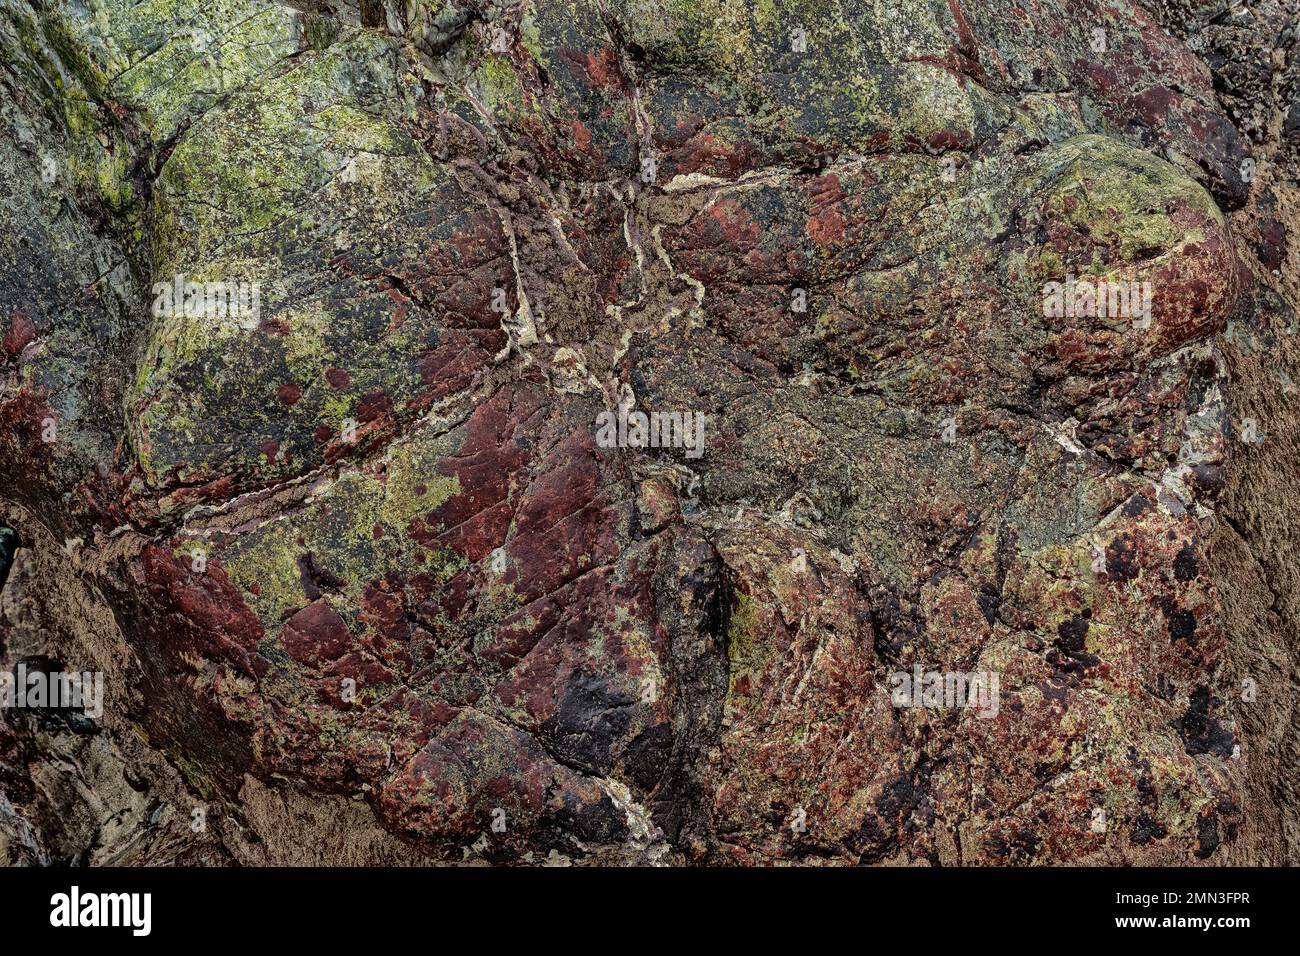 Die Gesteine in den Porthleven-Klippen sind hauptsächlich feinkörnige Sedimentgesteine ( Turbiditen). Turbiditen sind Sedimente, die transportiert und abgelagert werden Stockfoto